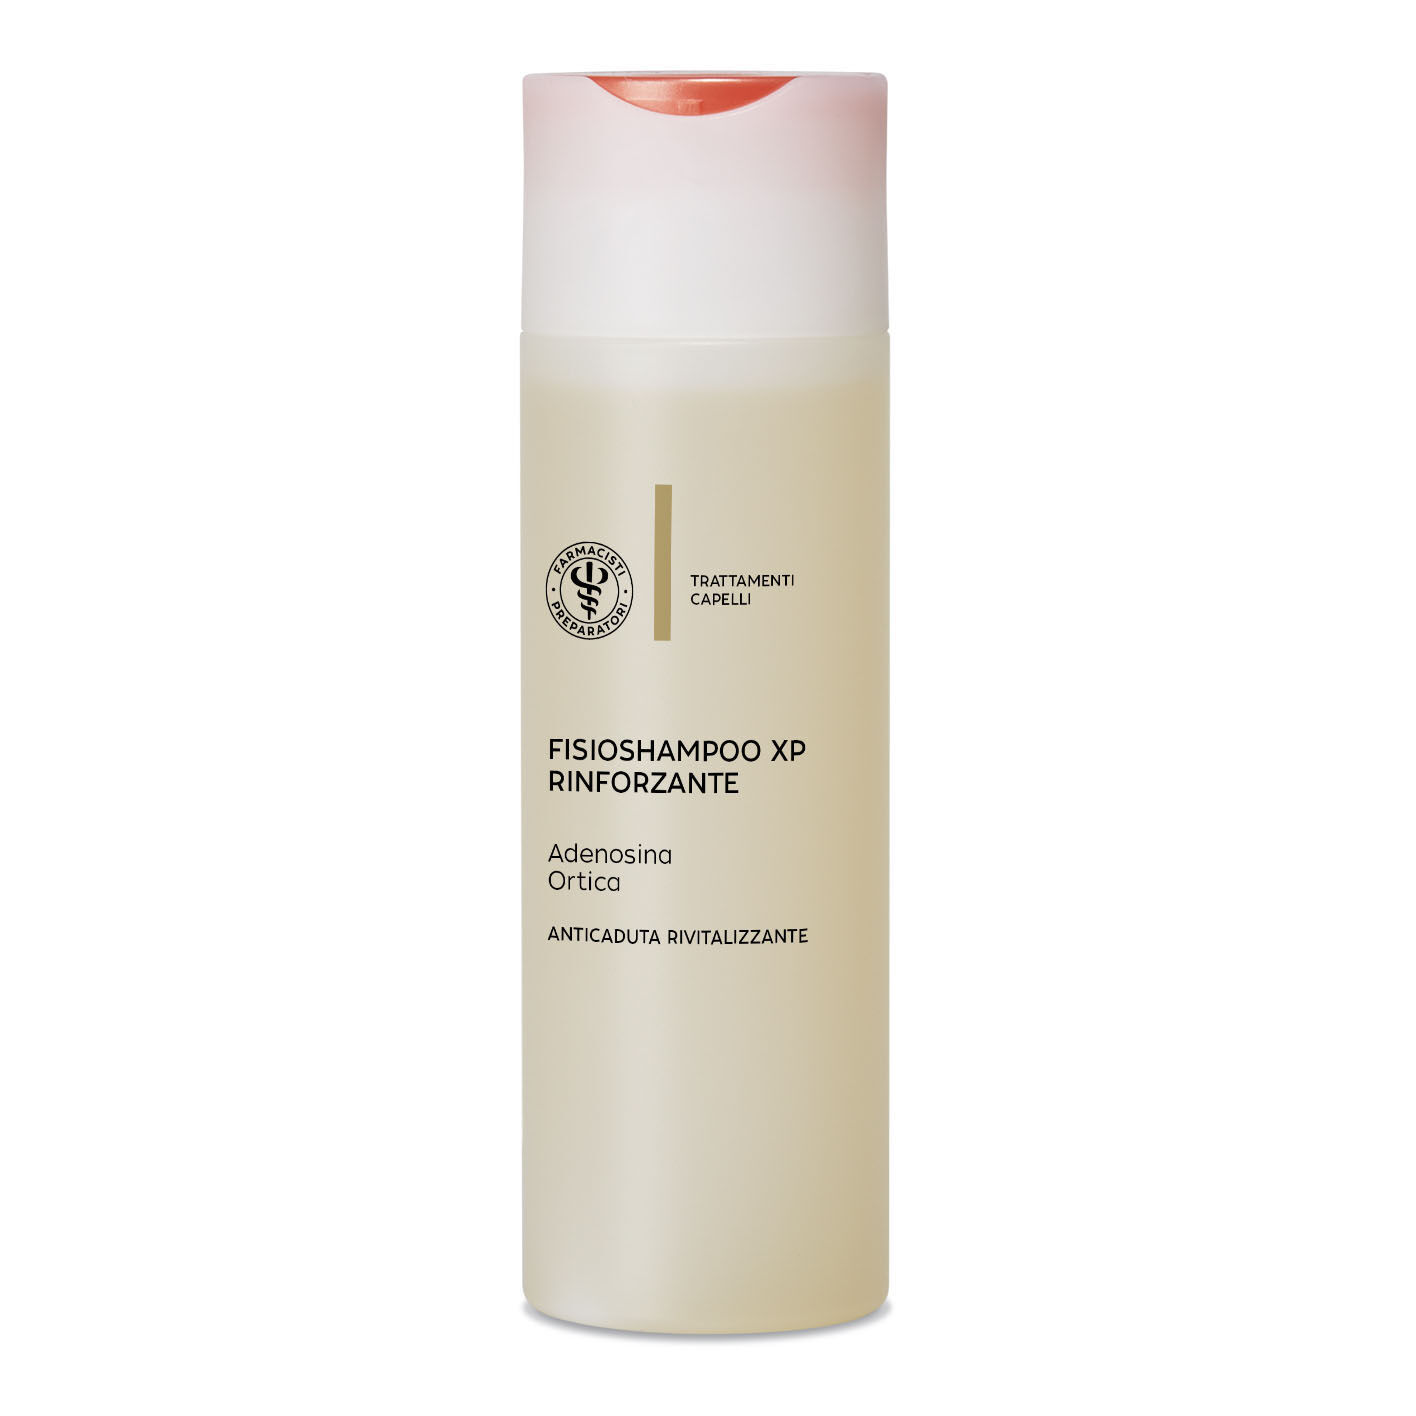 UNIFARCO Lfp shampoo rinforzante 200ml